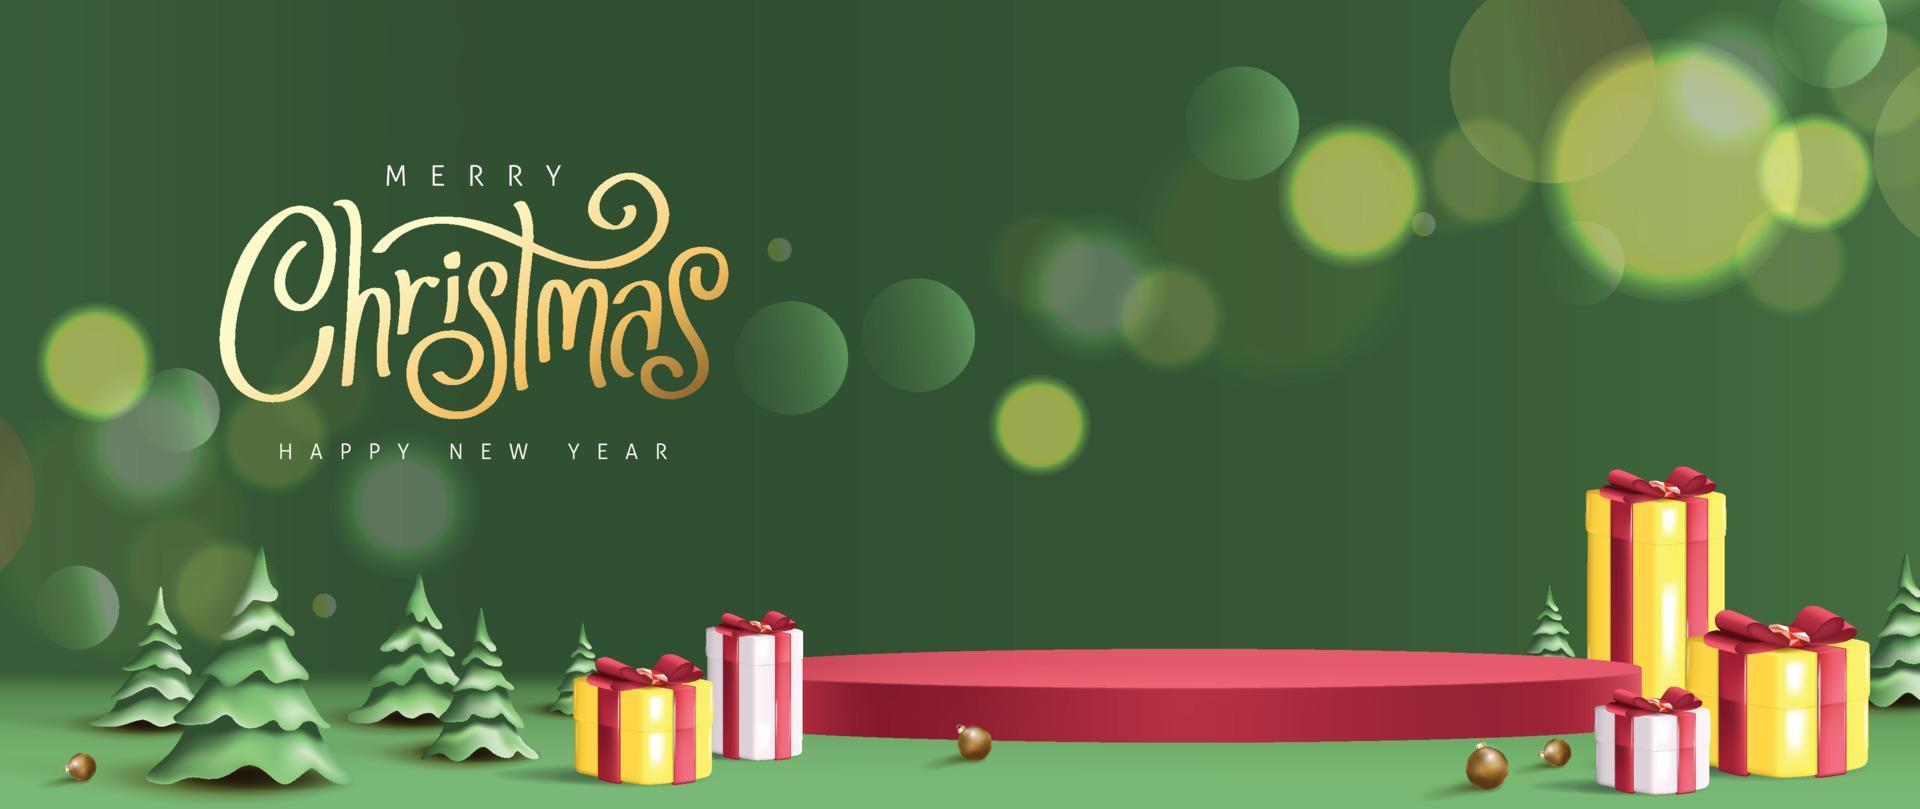 Frohe Weihnachten-Banner mit zylindrischer Form der Produktanzeige und Geschenkbox mit roter Schleife und grünem Hintergrund vektor